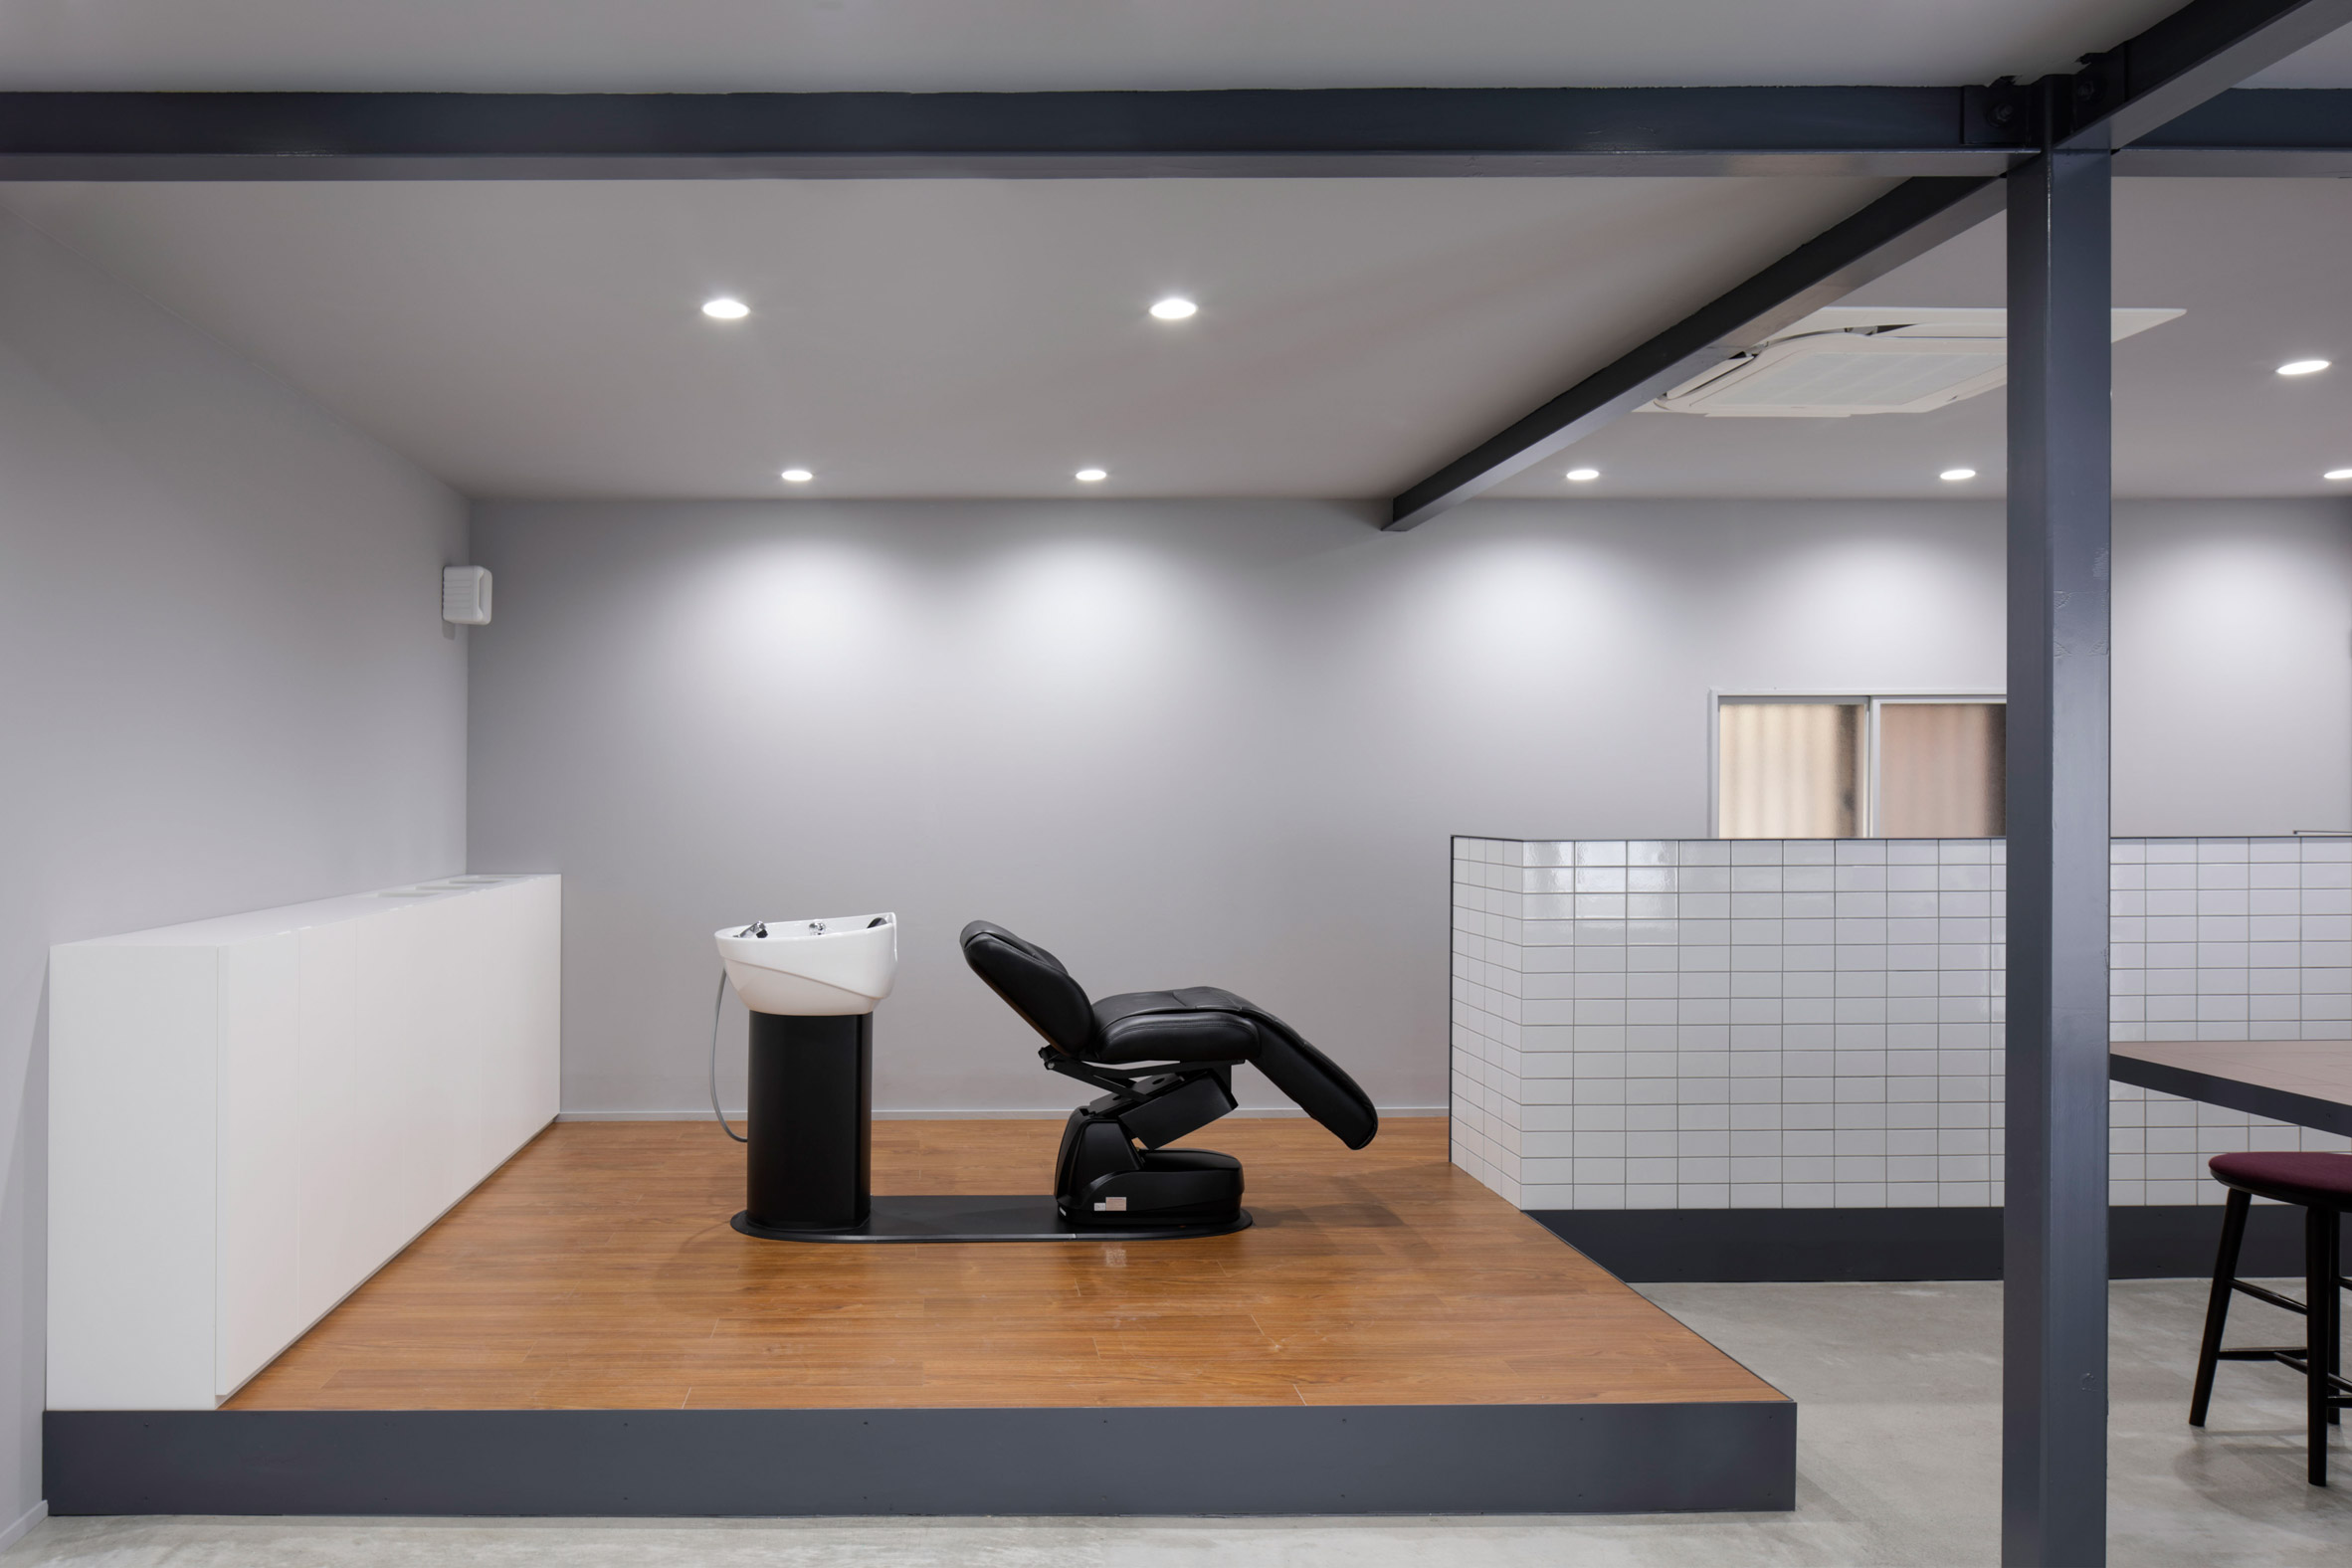 Hair salon in Japan by Hidenori Tsuboi Architects